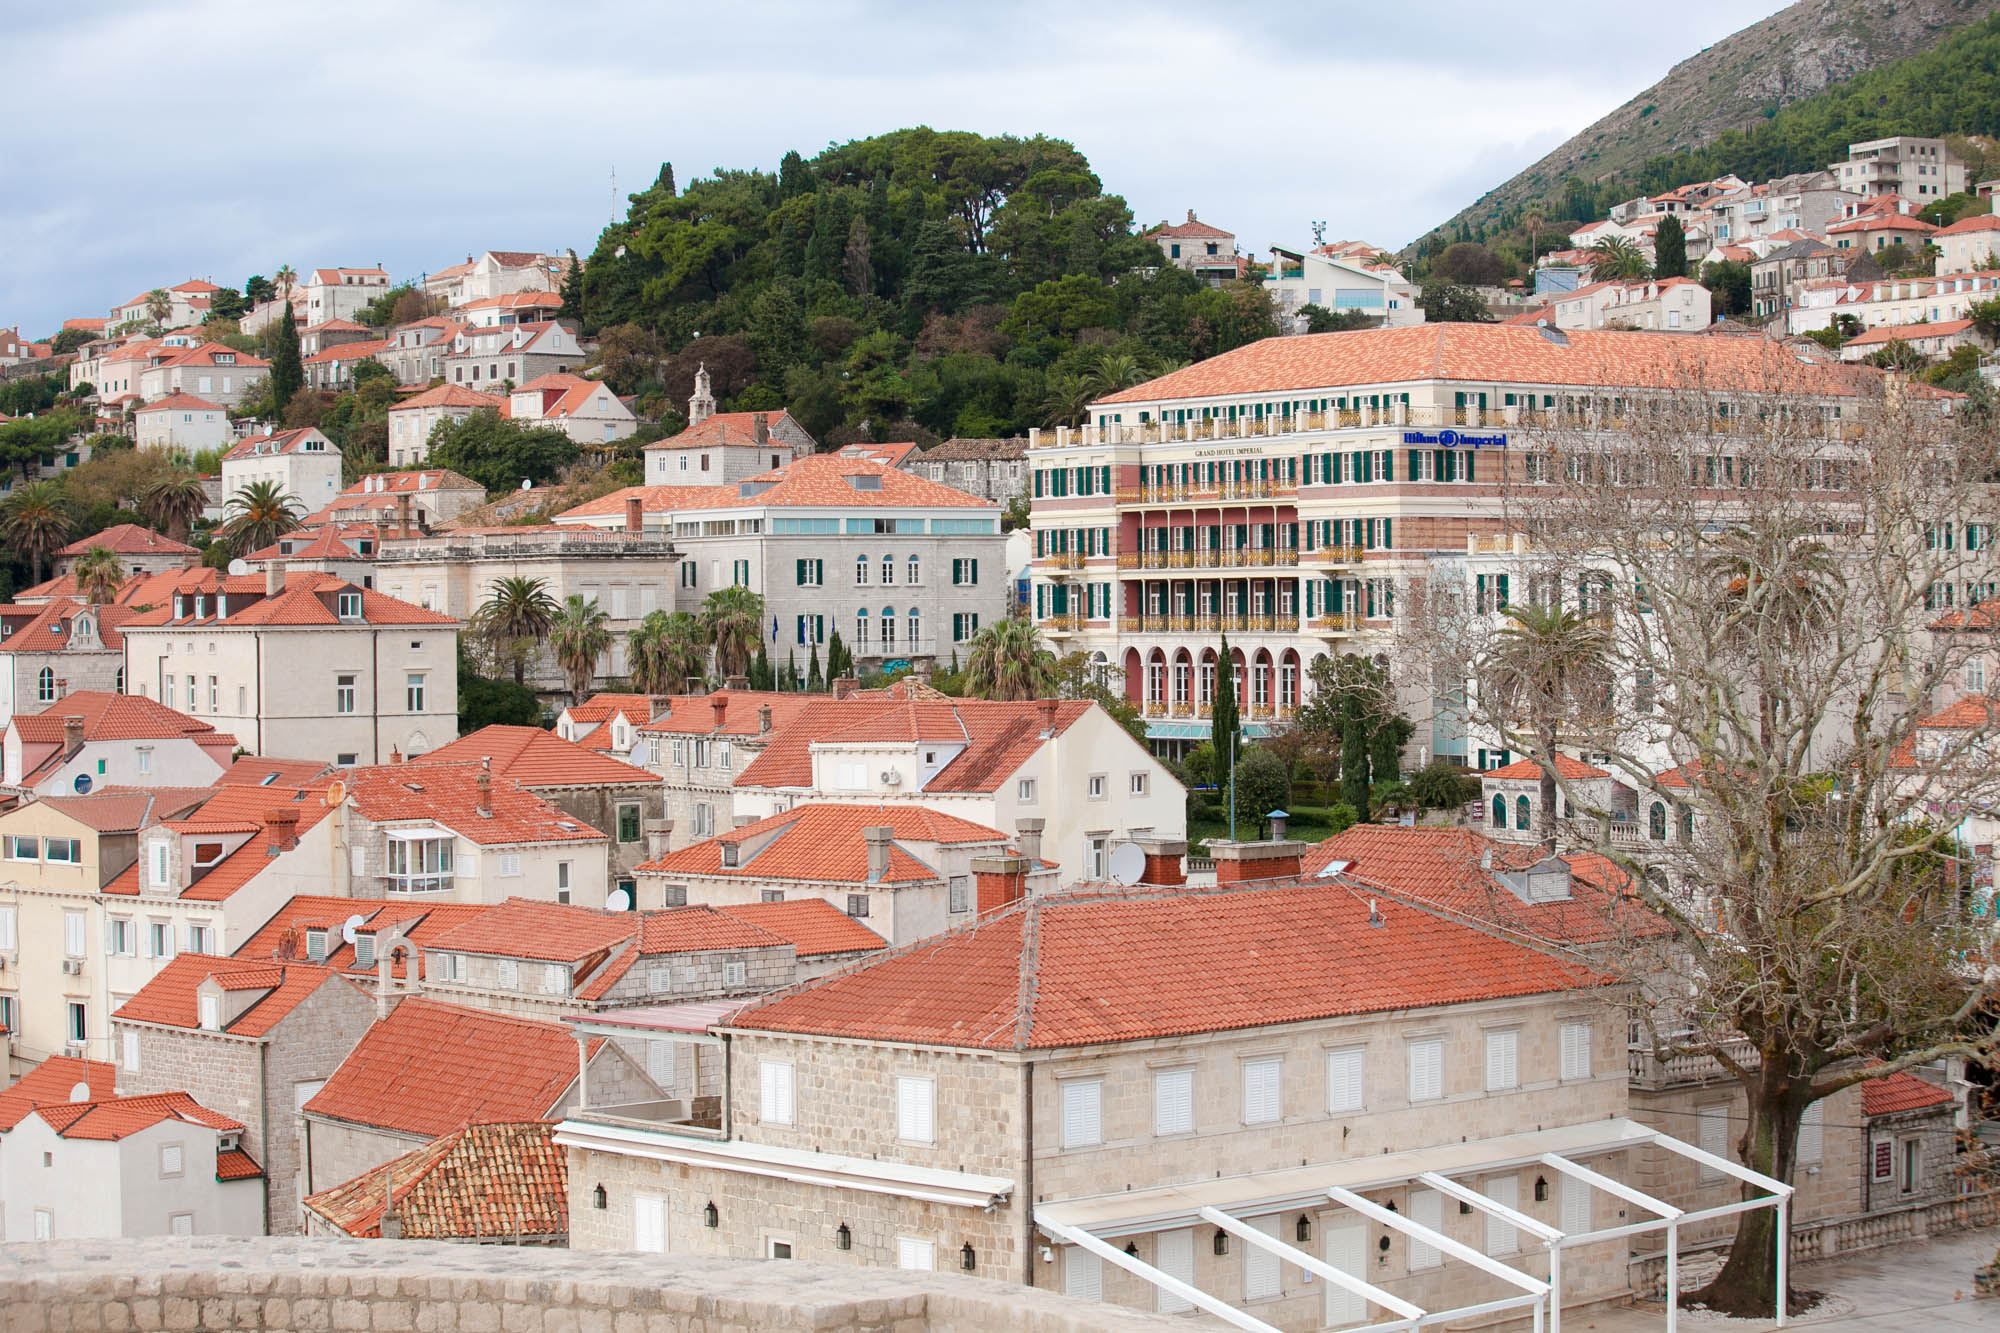 Old Dubrovnik landscape